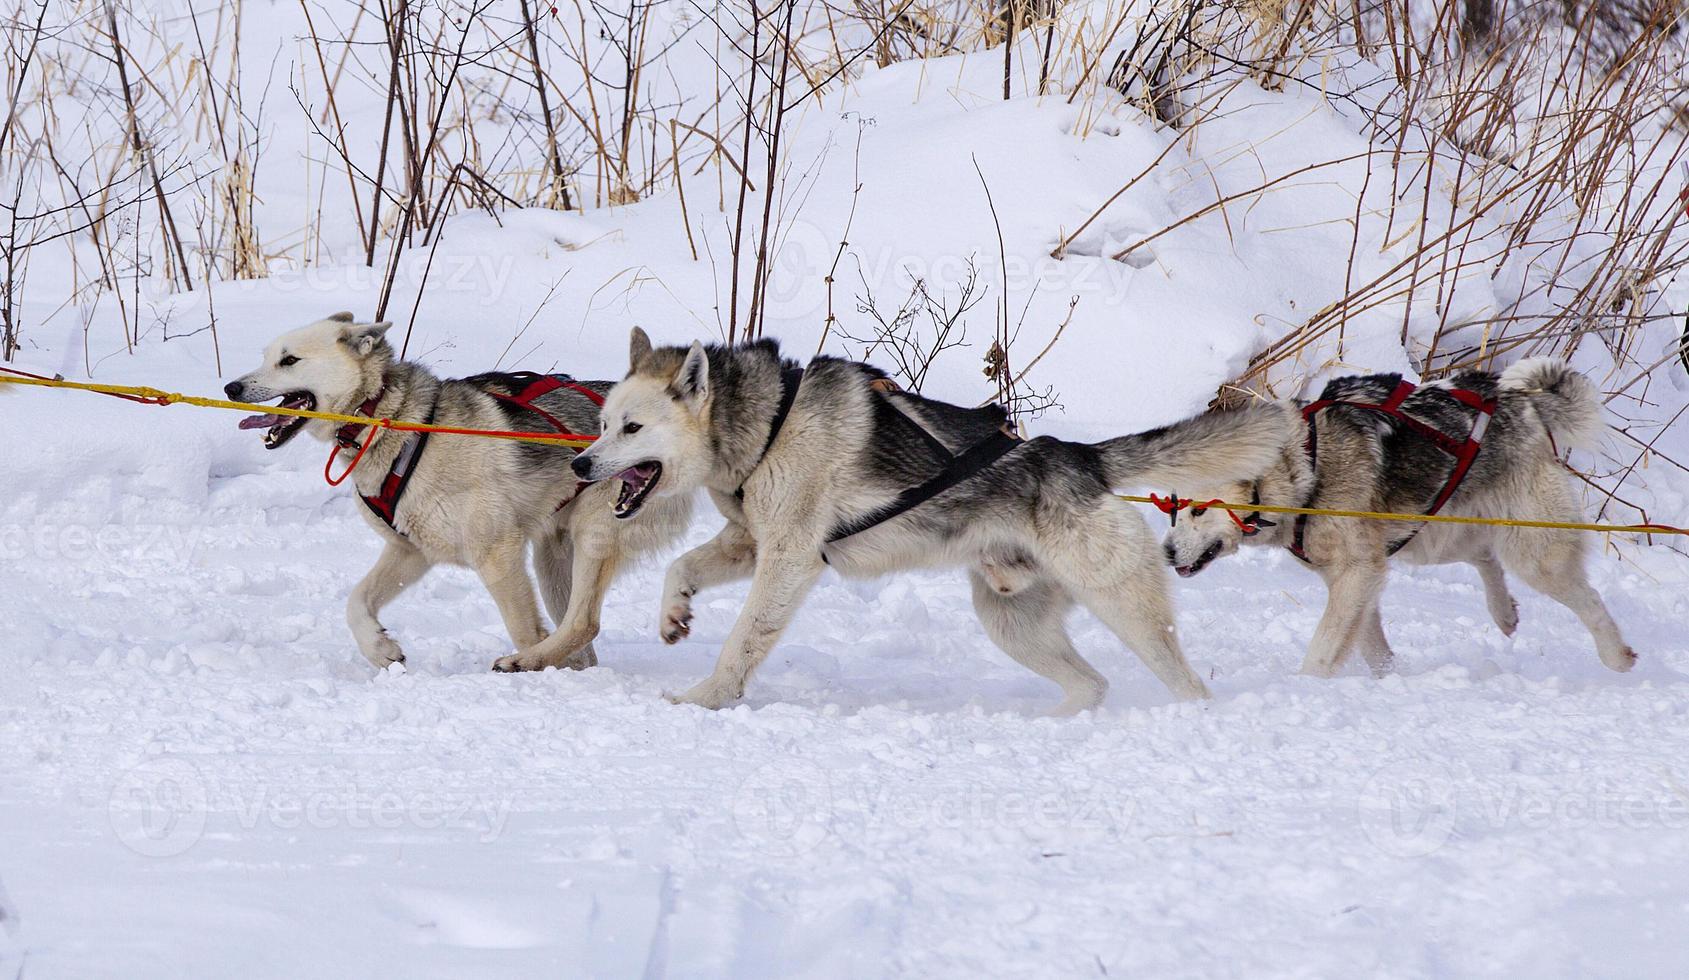 course de chiens de traîneau sur la neige en hiver photo